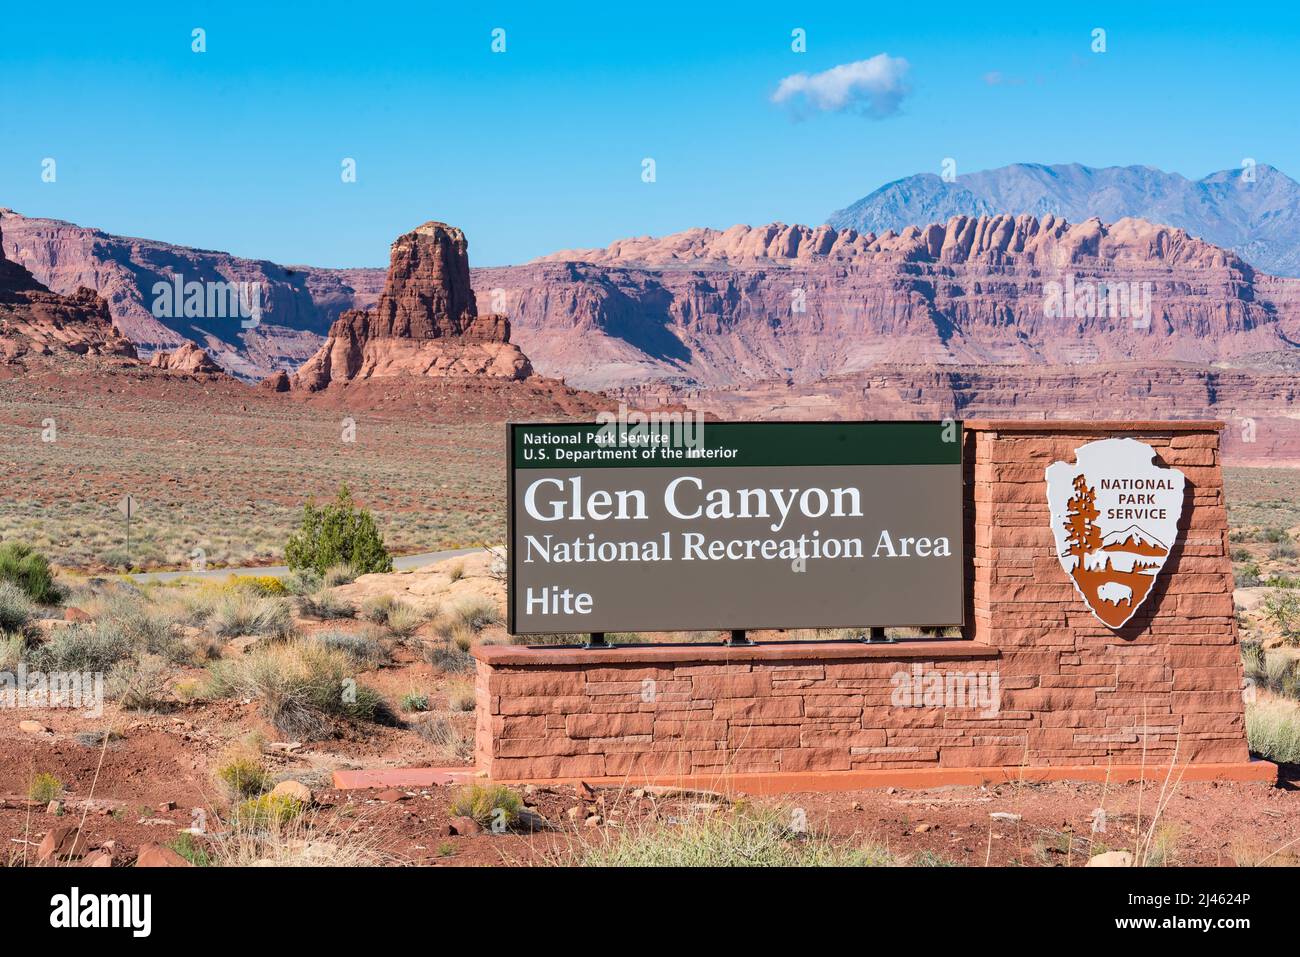 Hite, UT - 9 octobre 2021 : panneau d'entrée Hite à l'aire de loisirs nationale de Glen Canyon, dans le désert au sud-ouest de l'Utah Banque D'Images